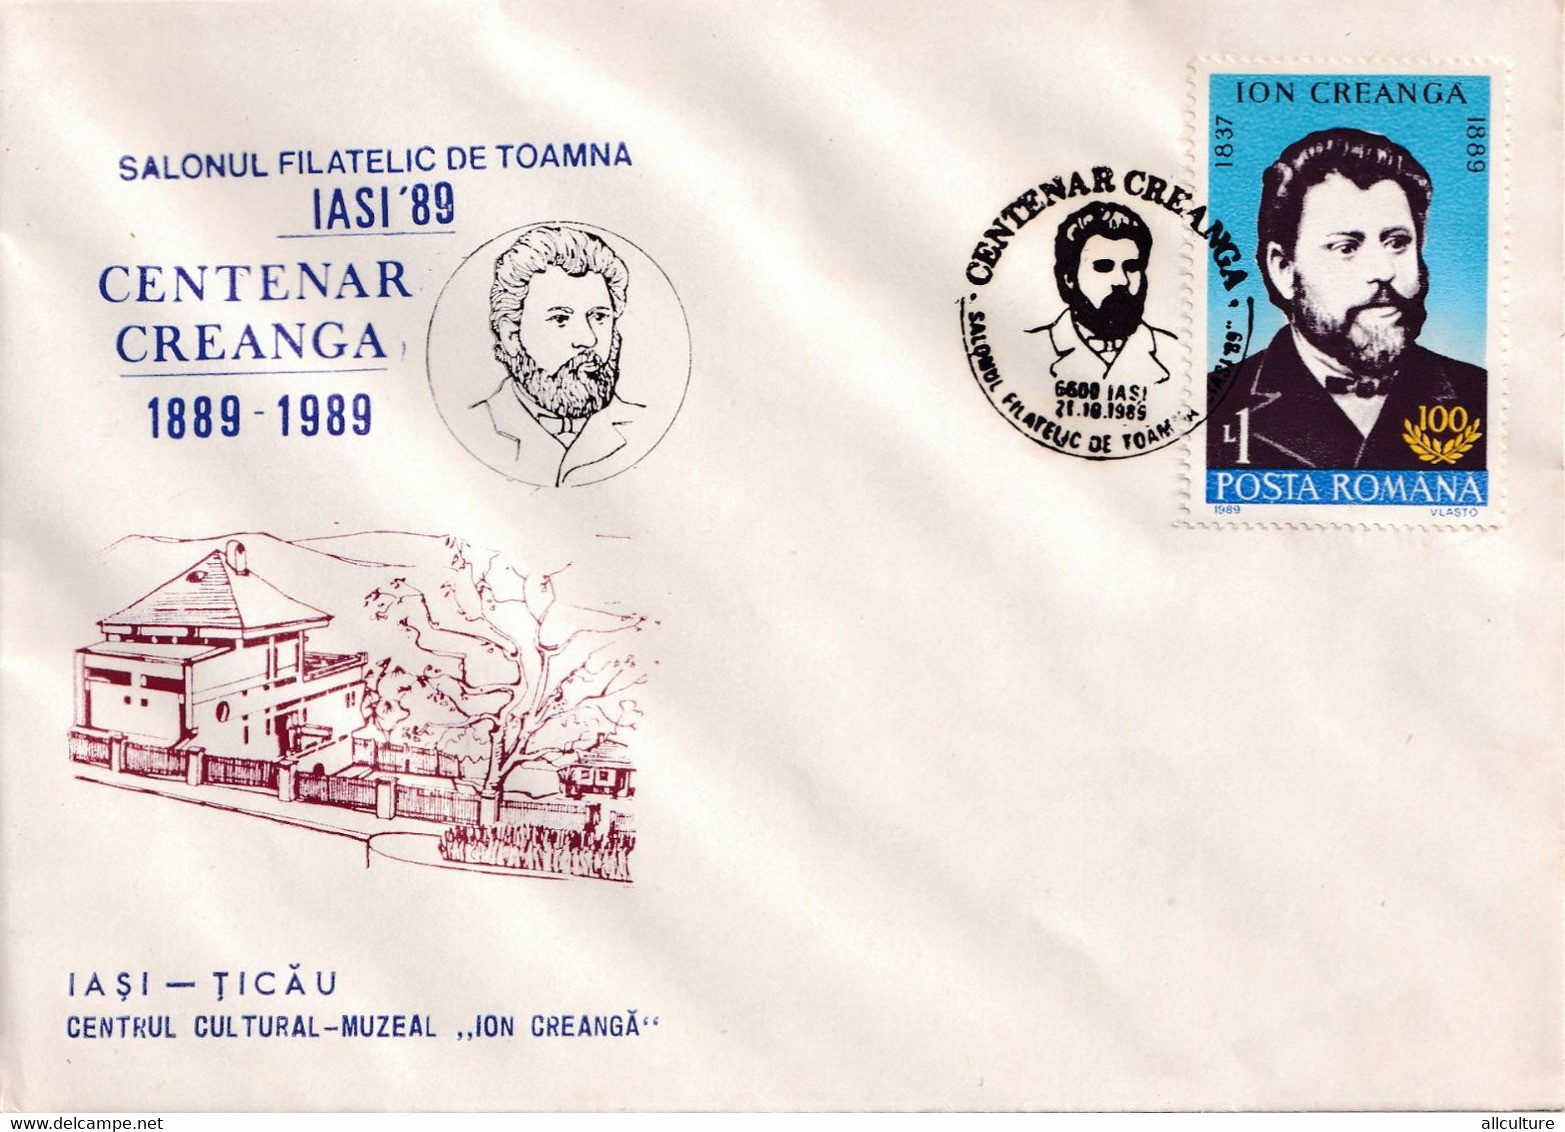 A3019 - Salonul Filatelic Iasi '89, Centenar Creanga, Iasi Ticau 1989 Republica Socialista Romania Posta Romana - Covers & Documents